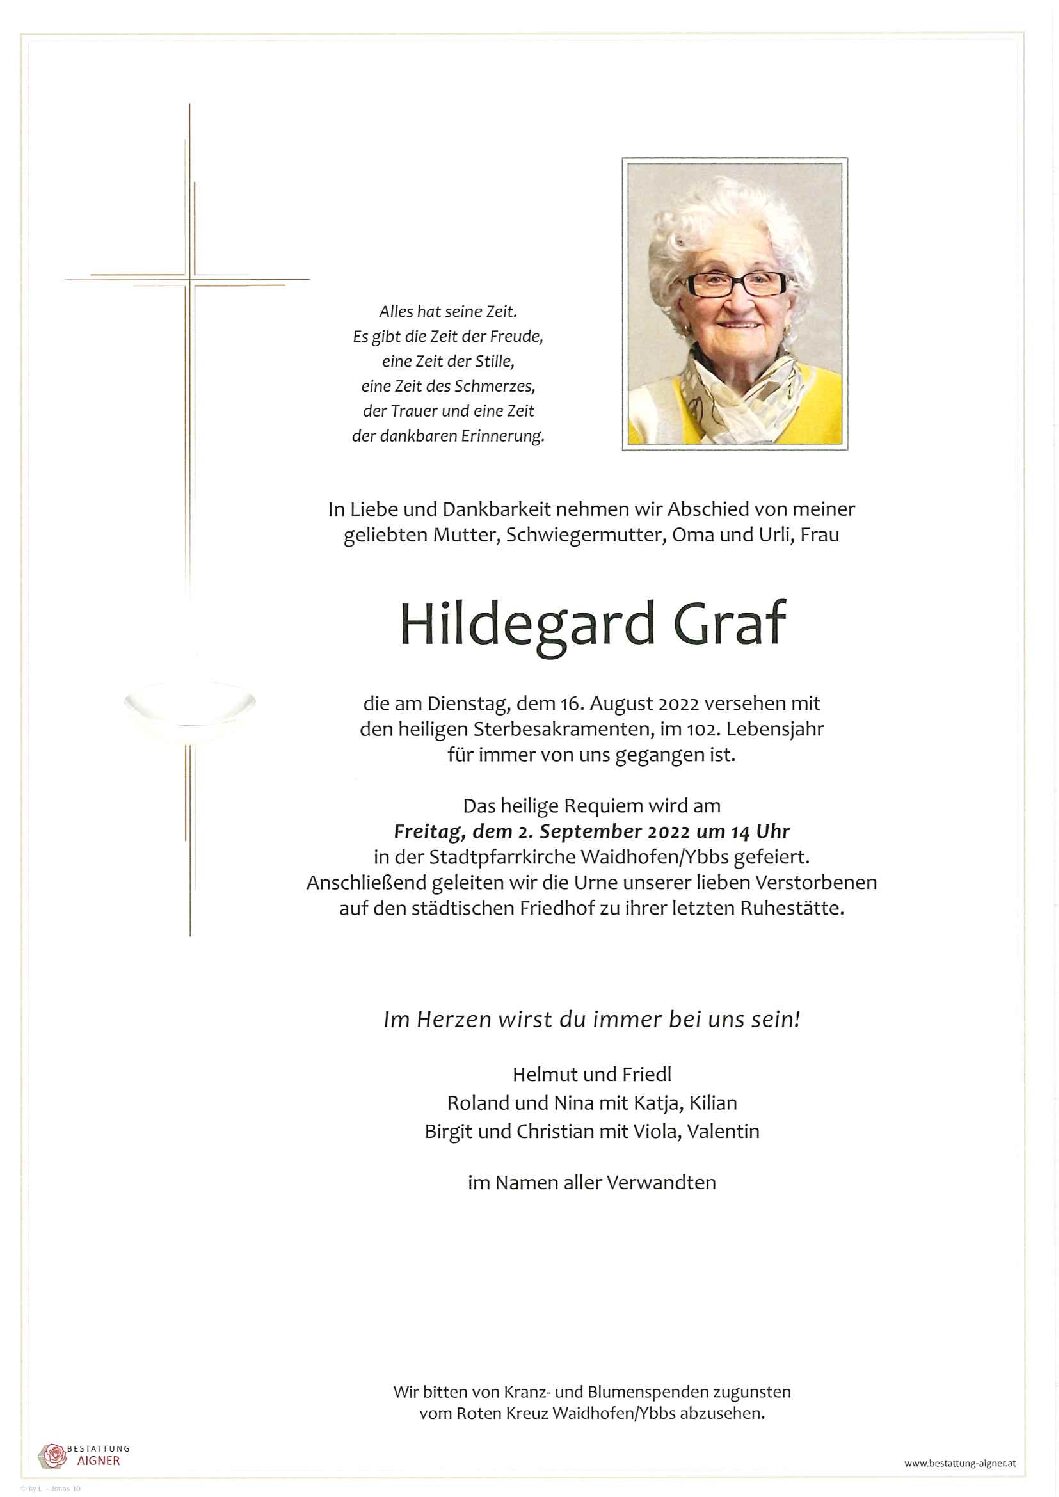 Hildegard Graf